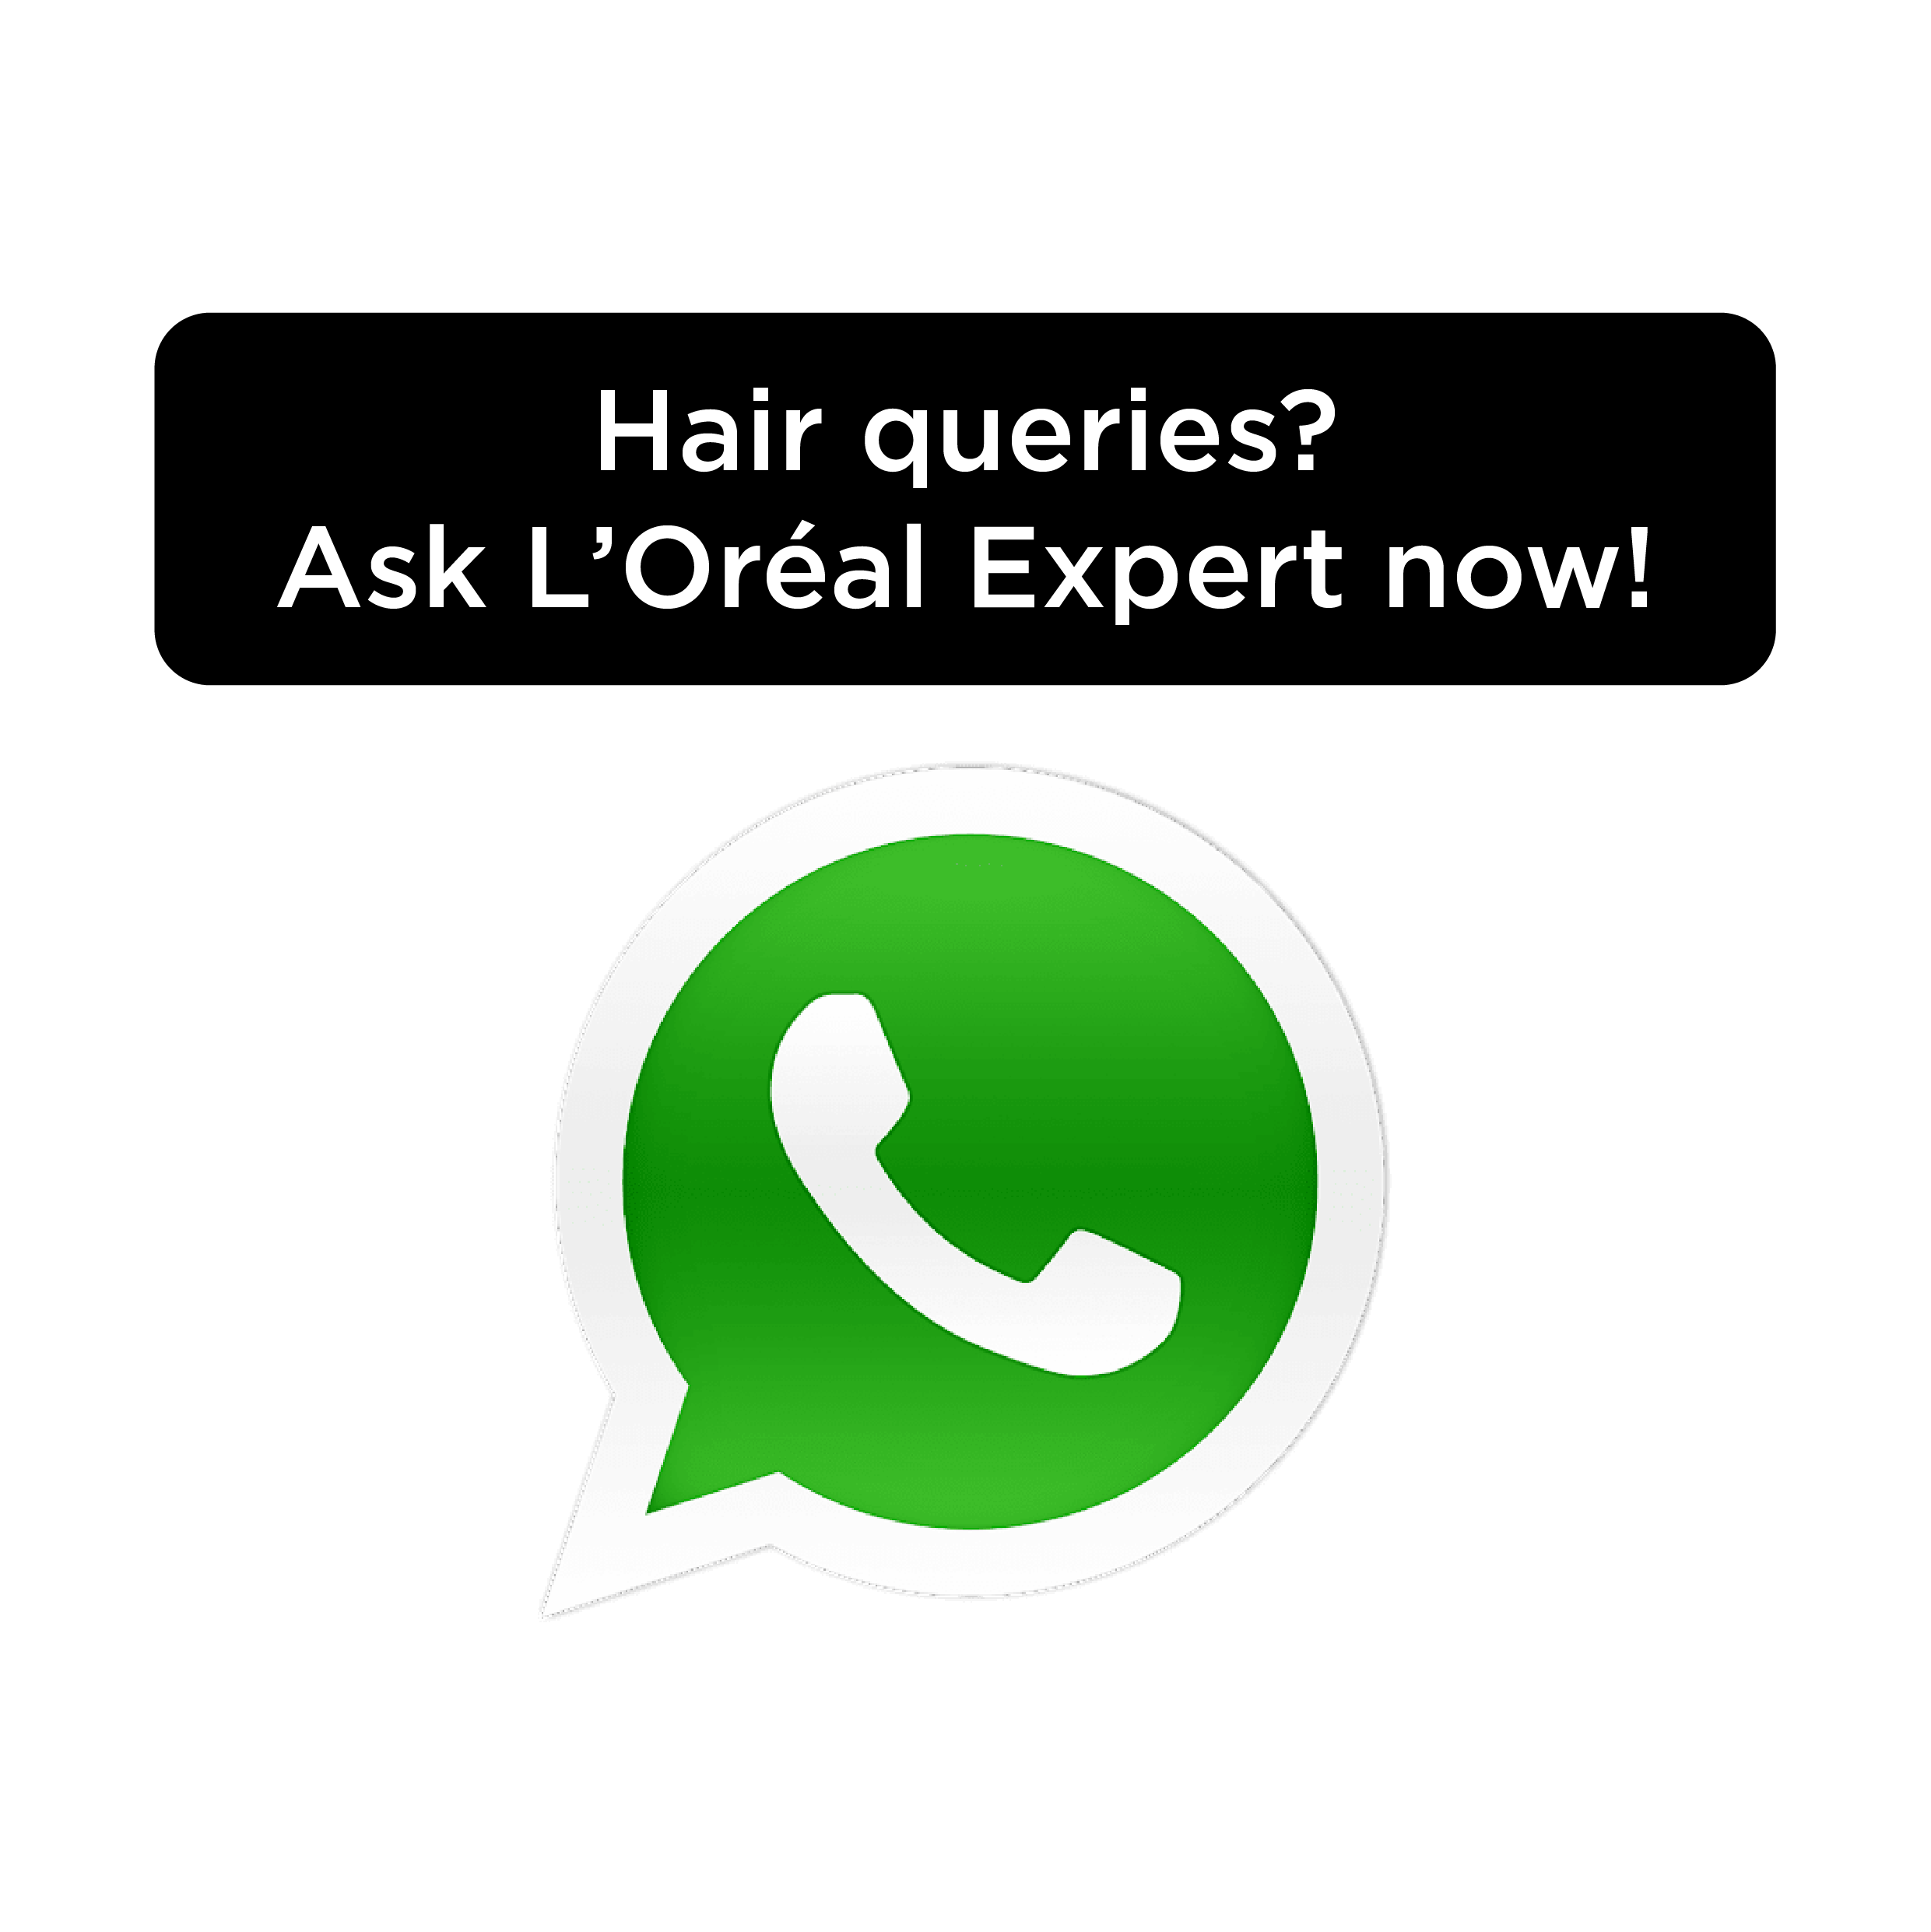 L’Oreal Professionnel Whatsapp